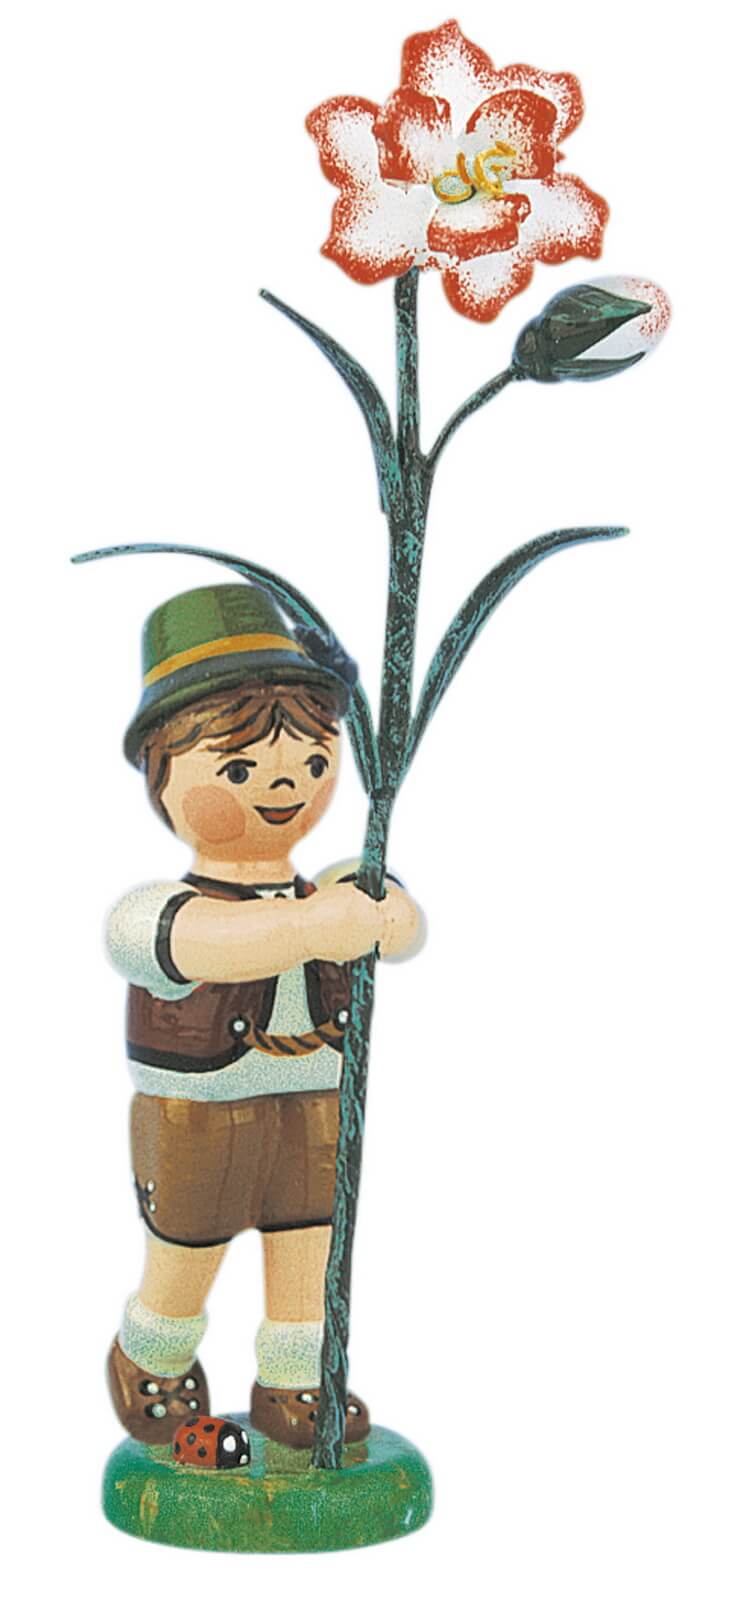 Junge mit Nelke aus Holz aus der Serie Hubrig Blumenkinder